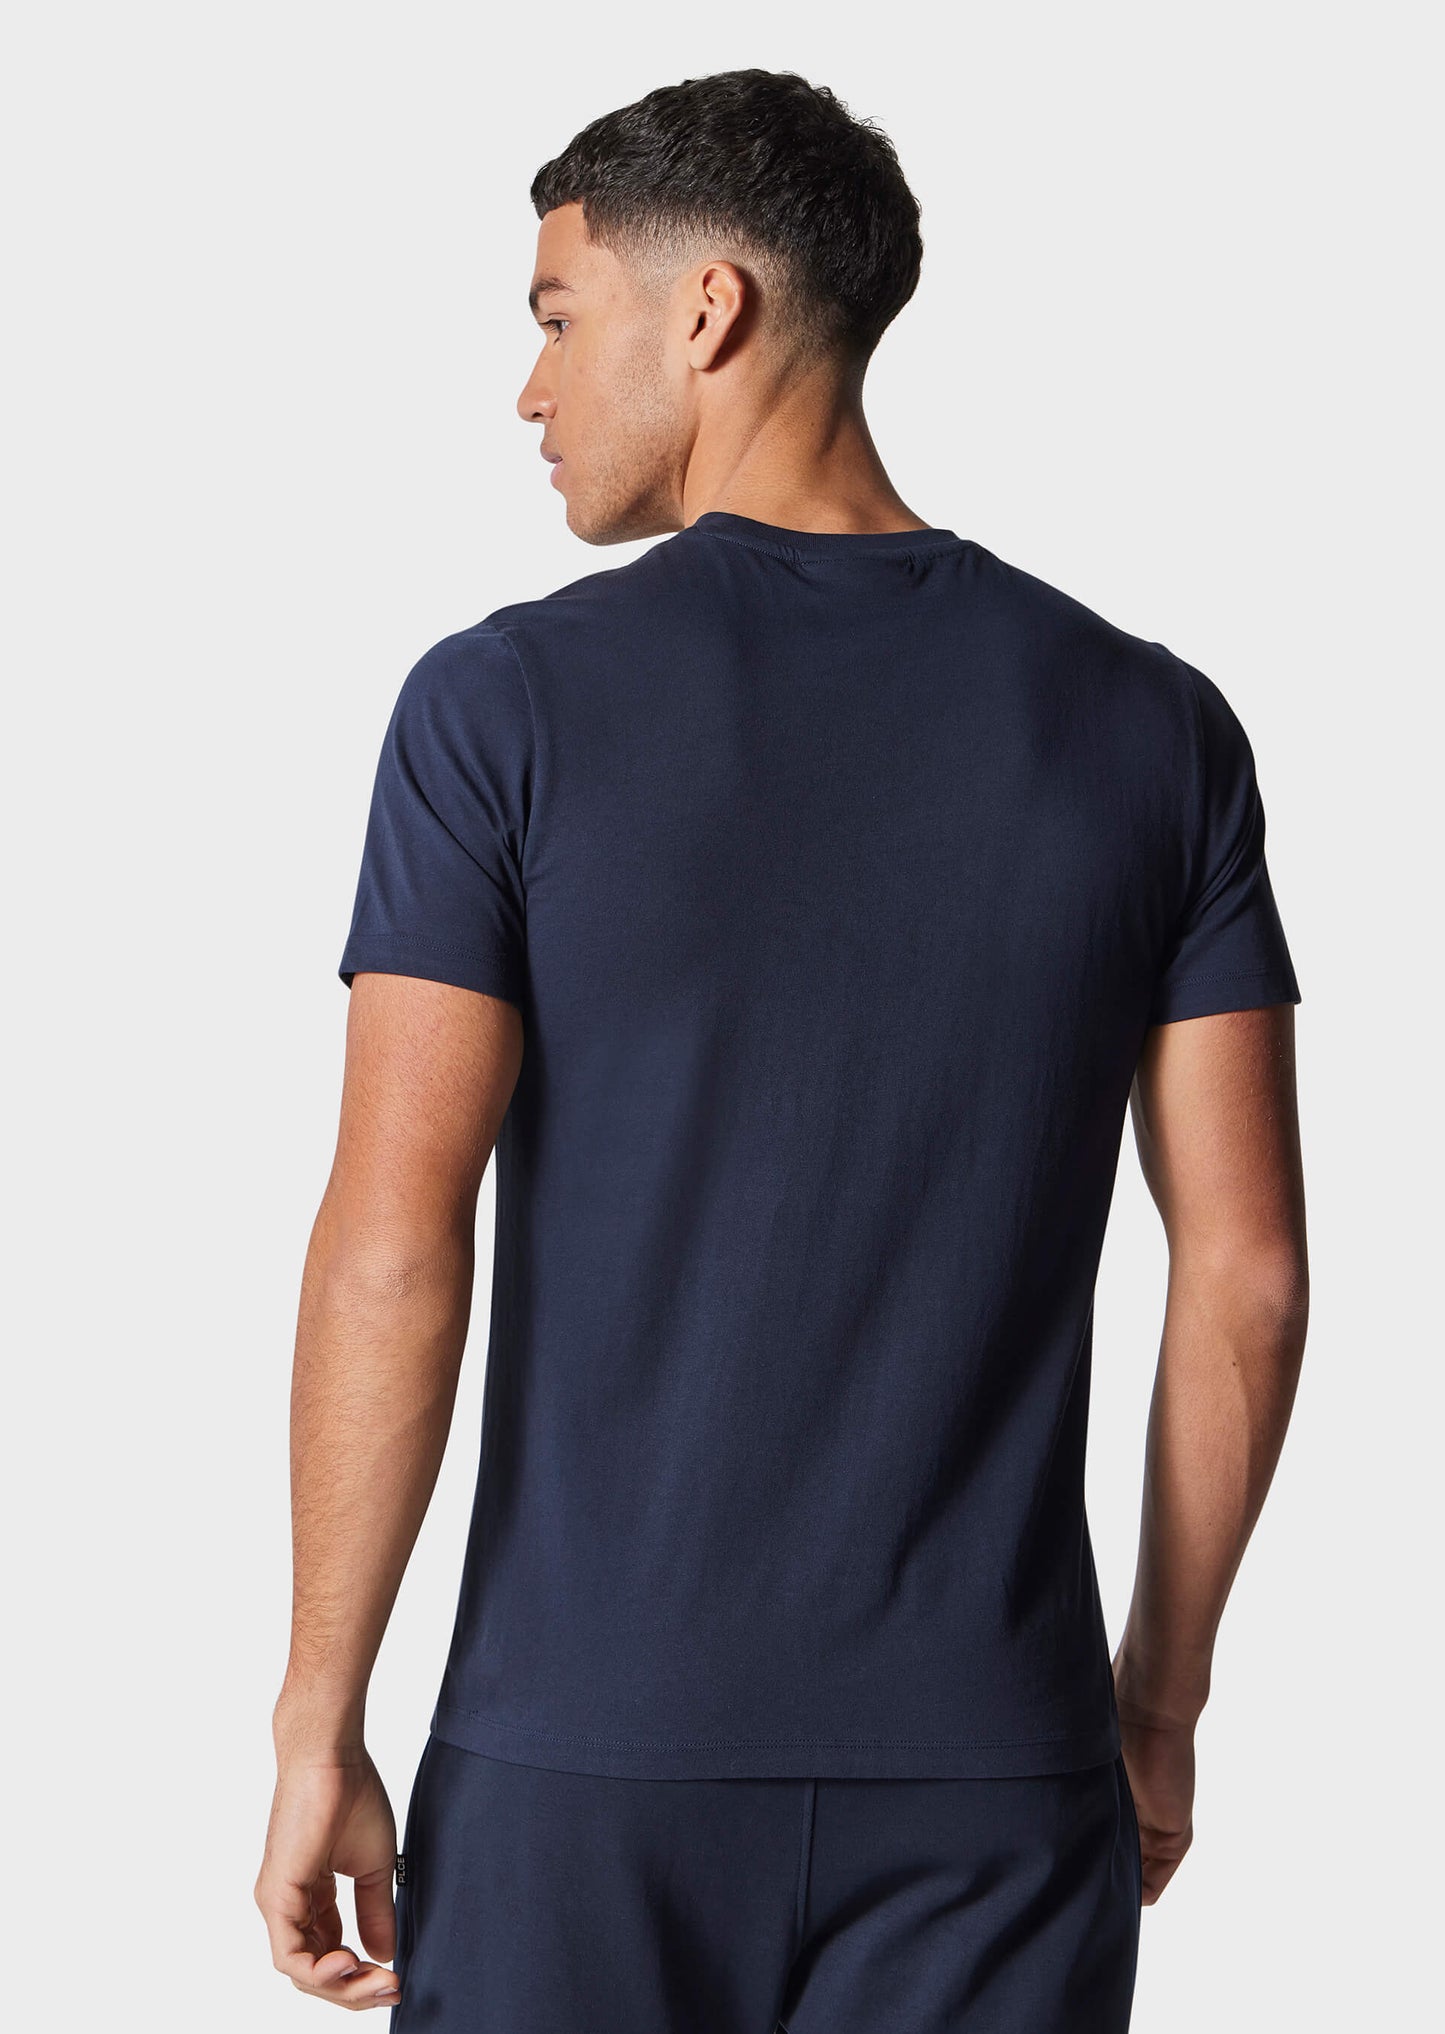 Tino Navy T-Shirt